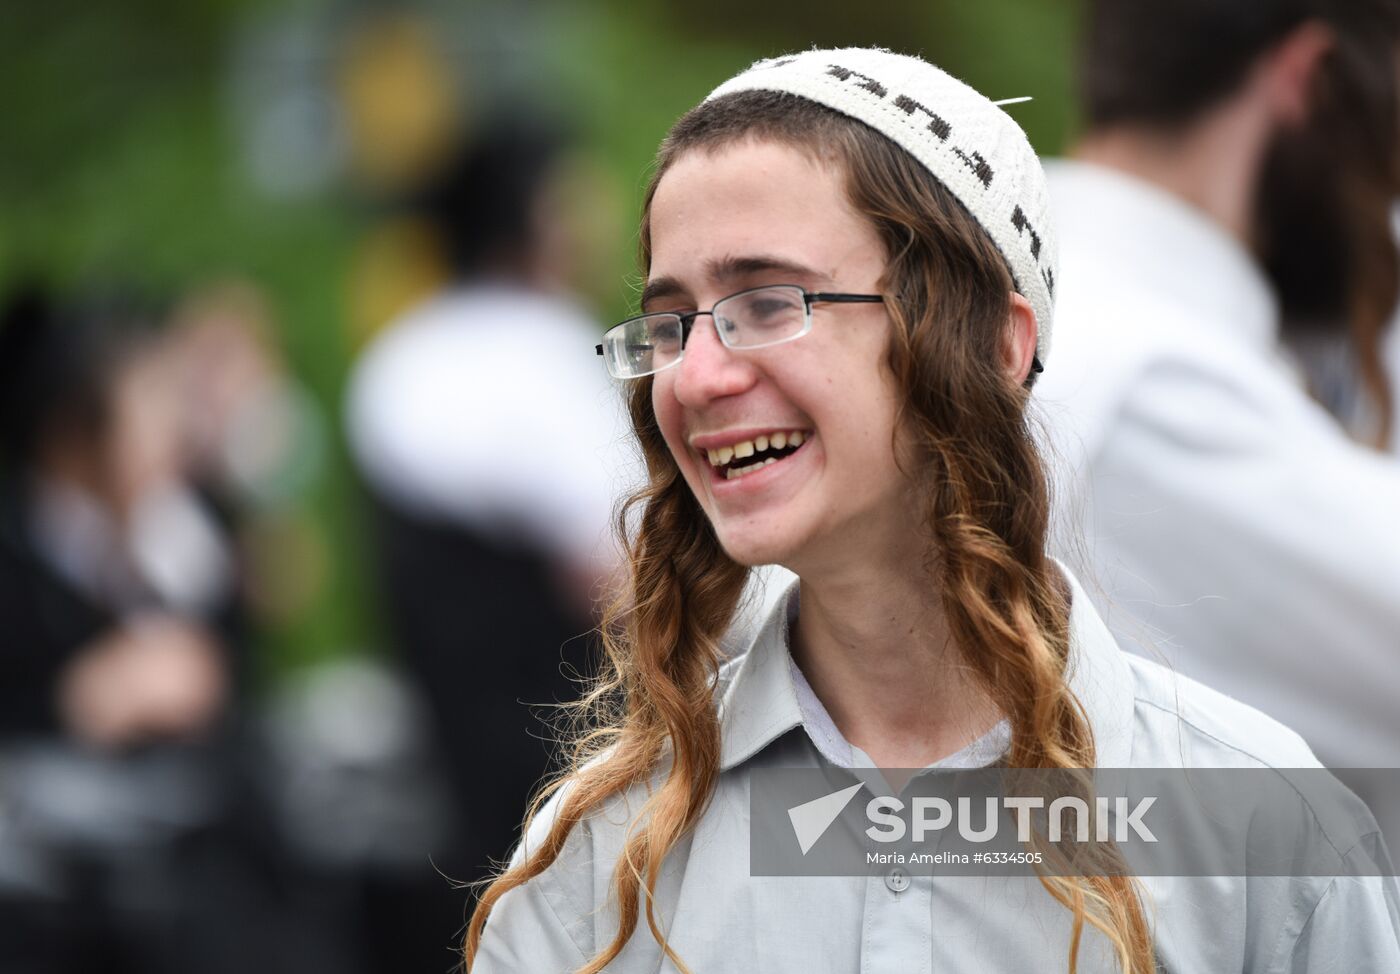 Belarus Jewish Pilgrims